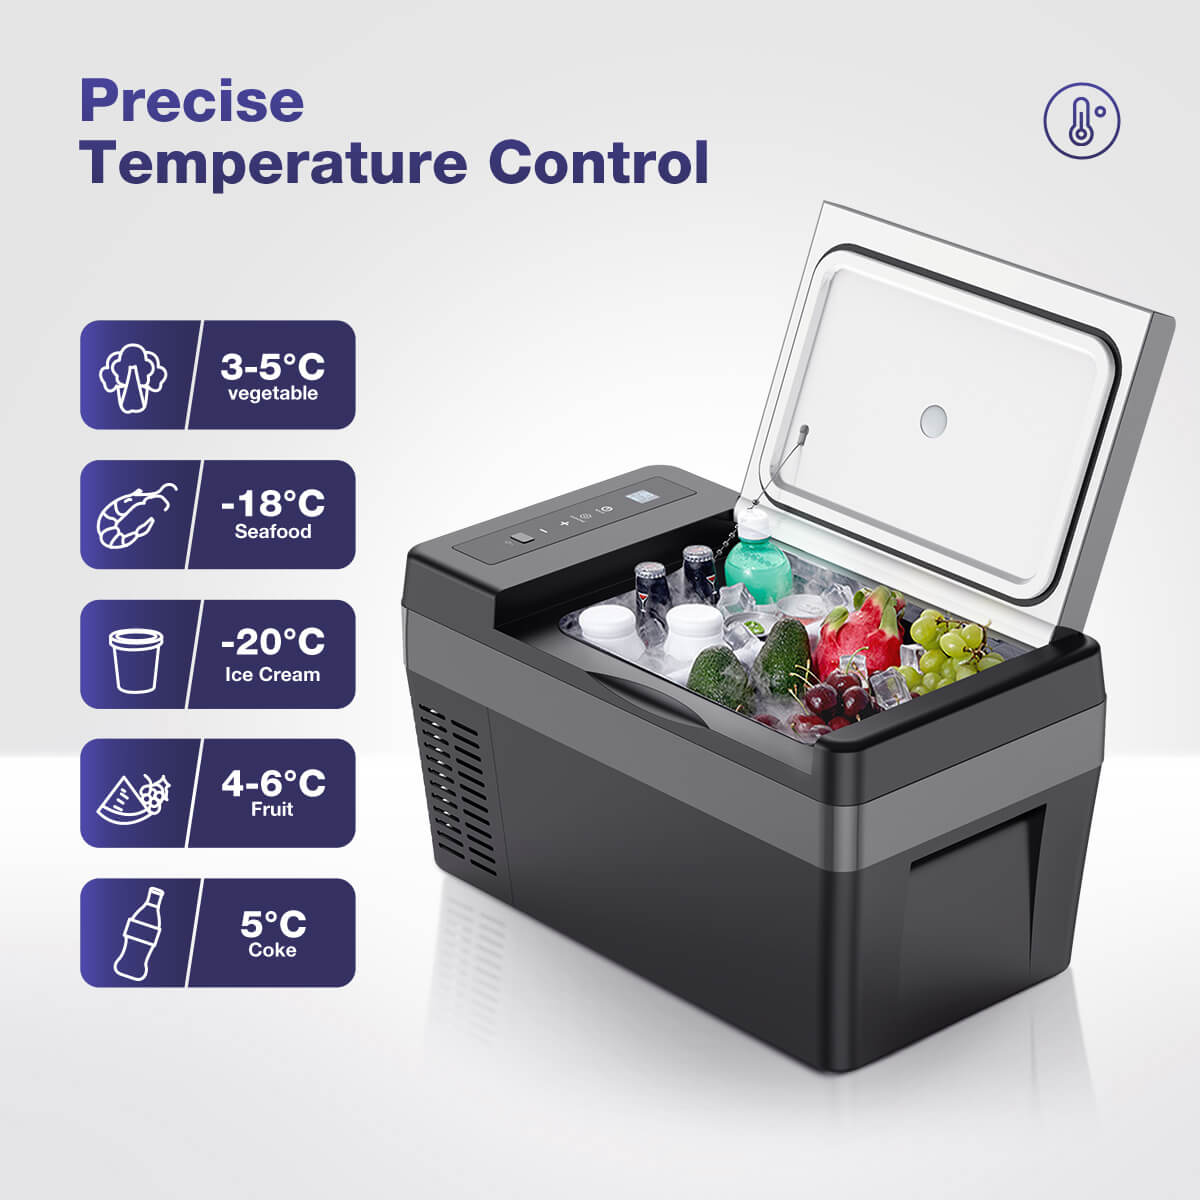 F19-car-fridge-precise-temperature-control